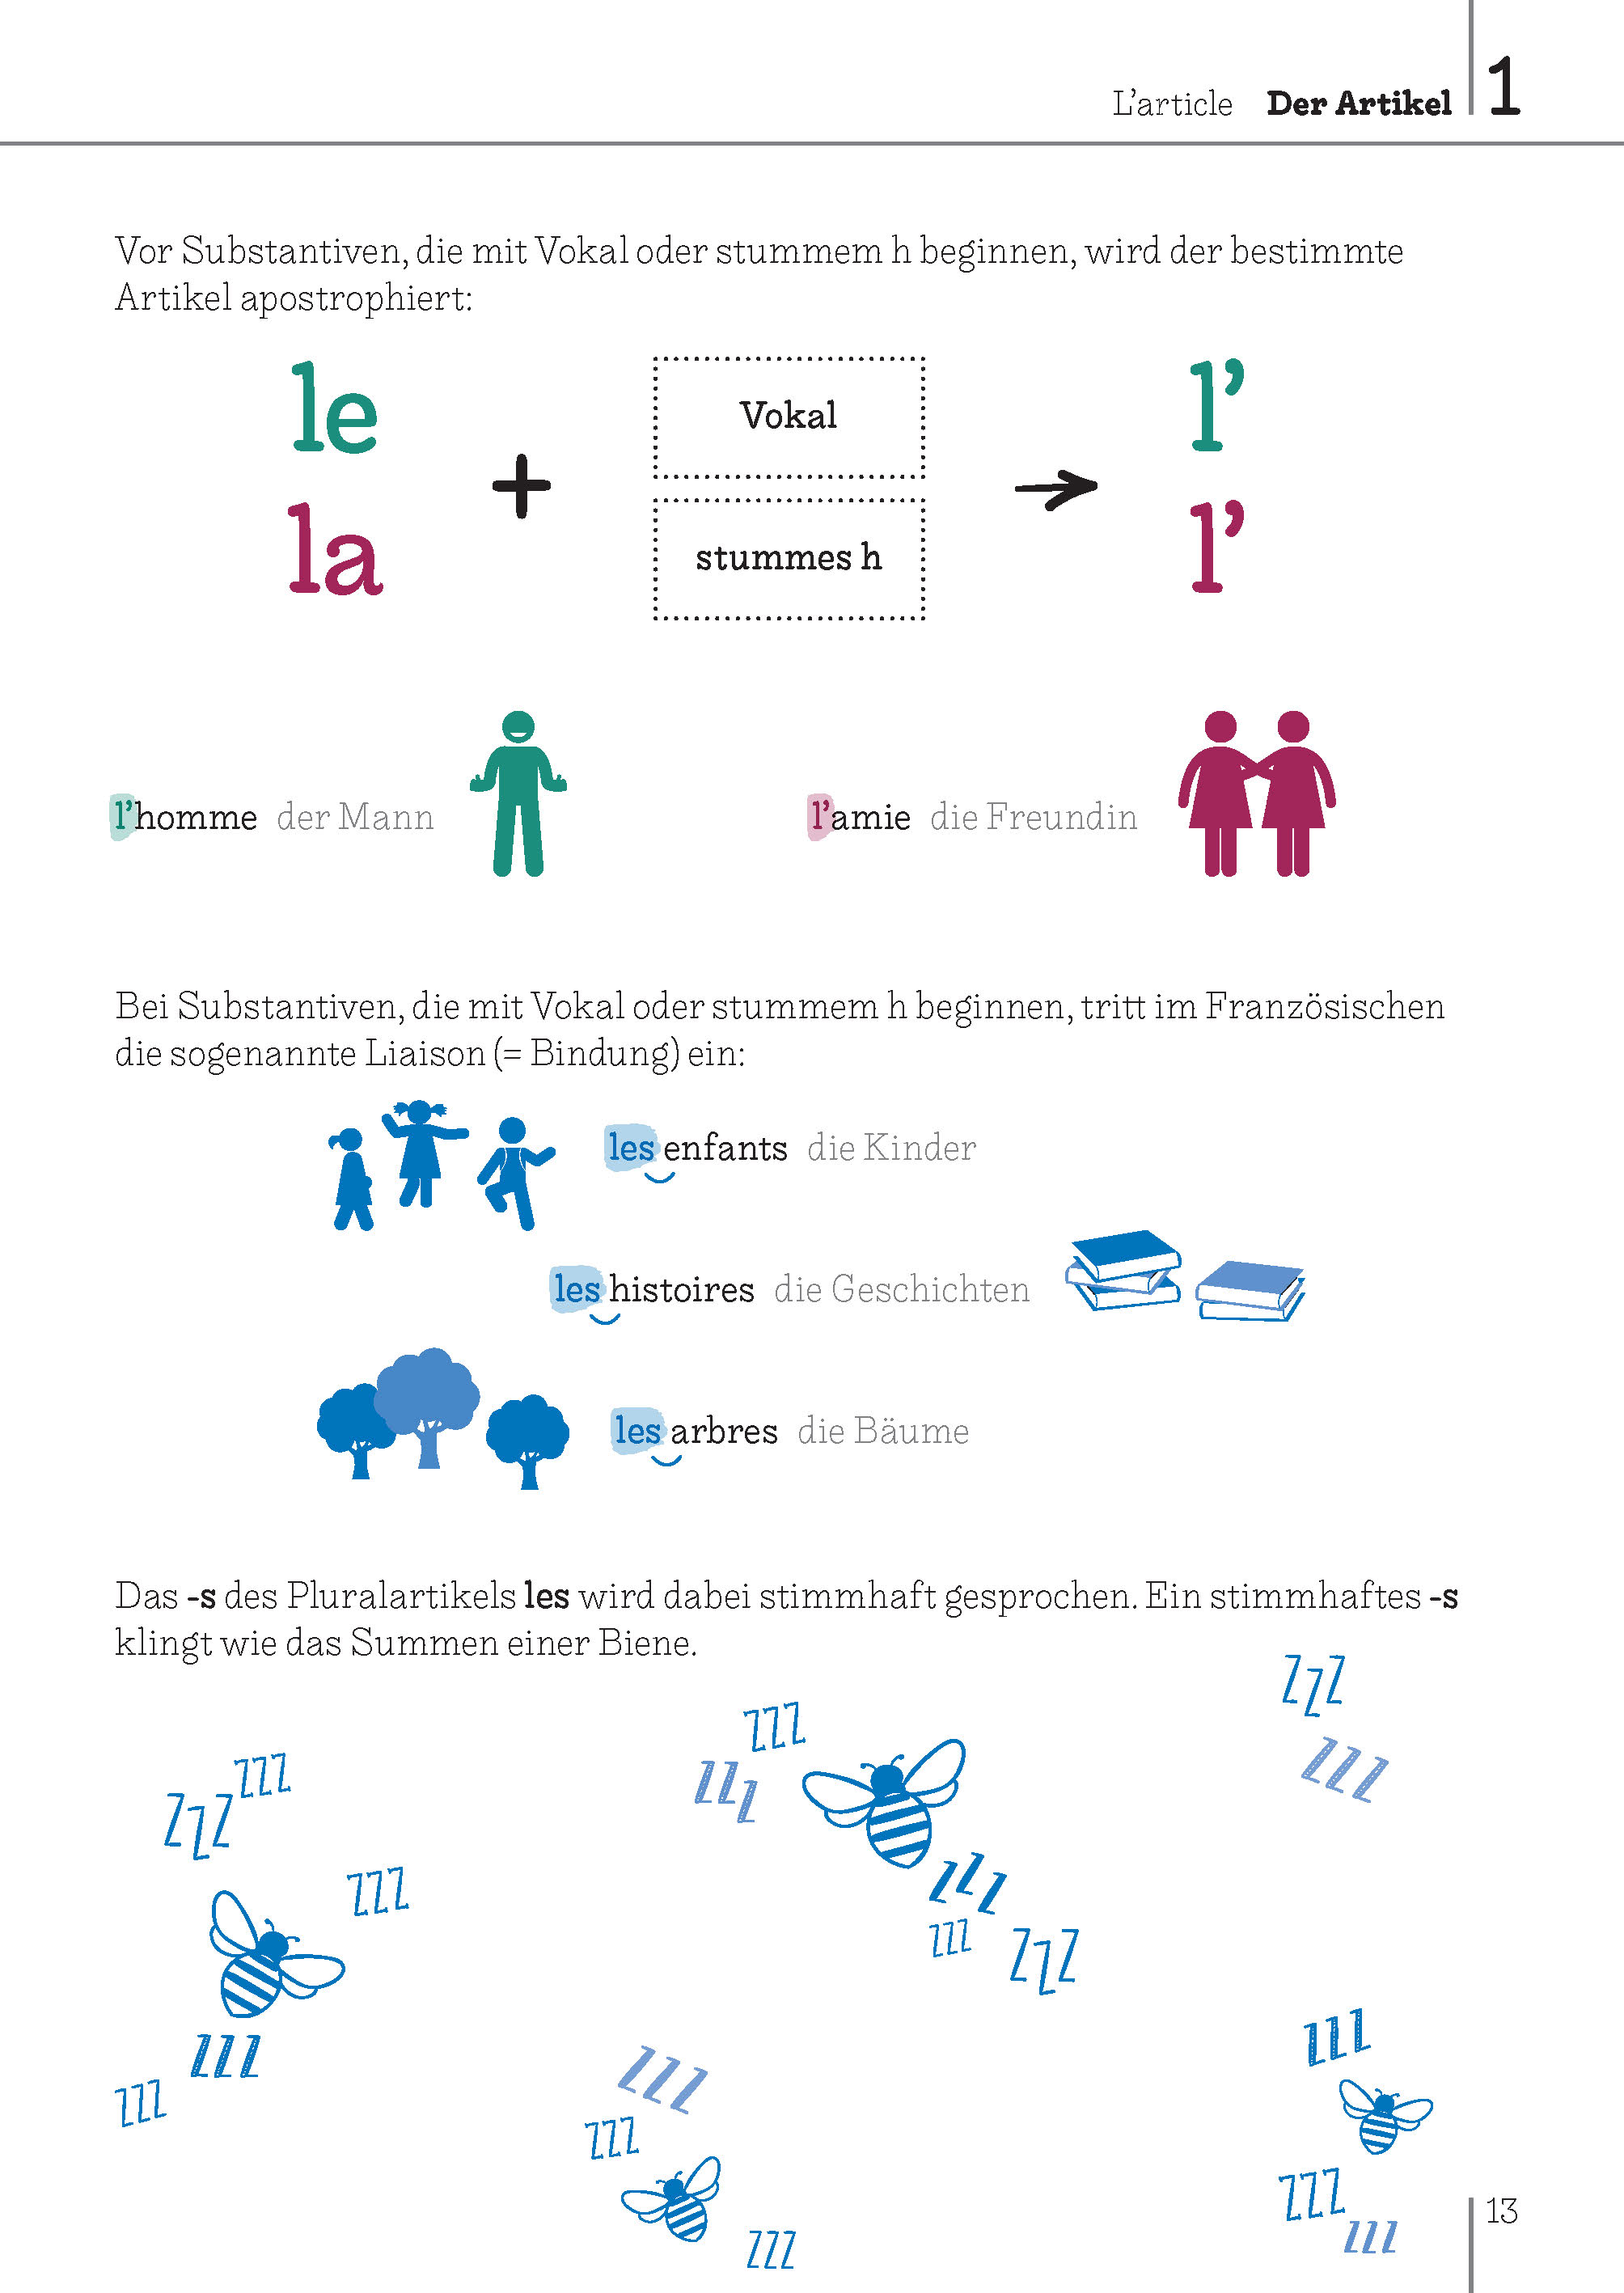 Langenscheidt Bild für Bild Grammatik Französisch